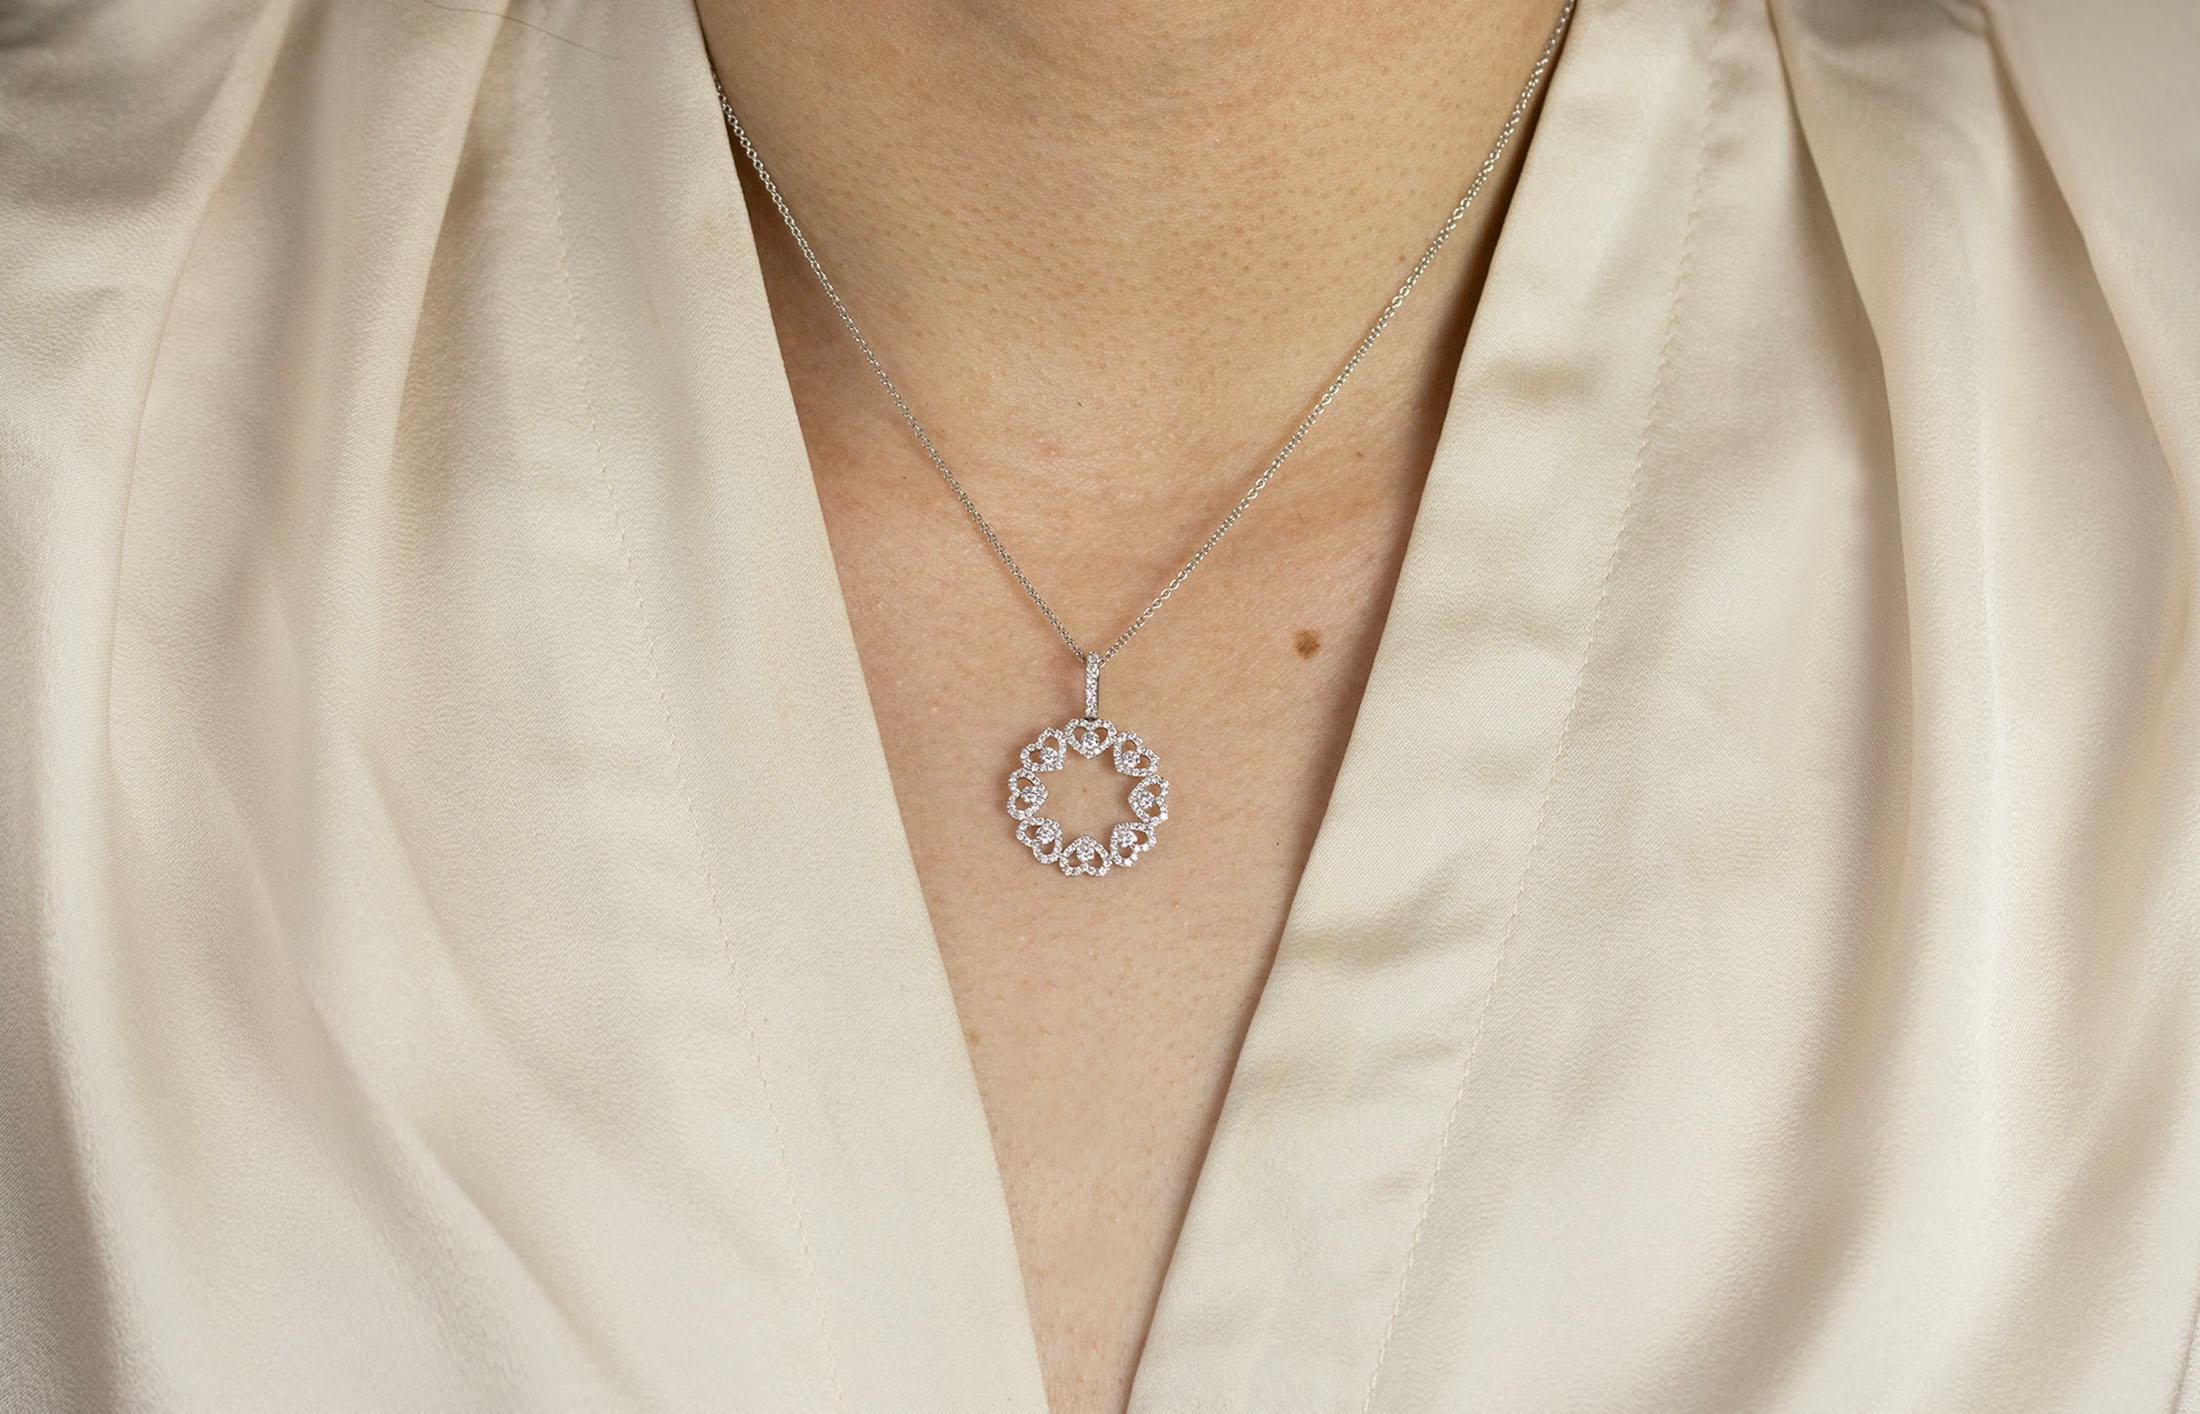 Un collier pendentif unique mettant en valeur des diamants ronds et brillants sertis en forme de petits cœurs autour d'un motif circulaire ajouré. Les diamants pèsent 0.73 carats au total. Fabriqué en or blanc 18 carats. Il est suspendu à une chaîne